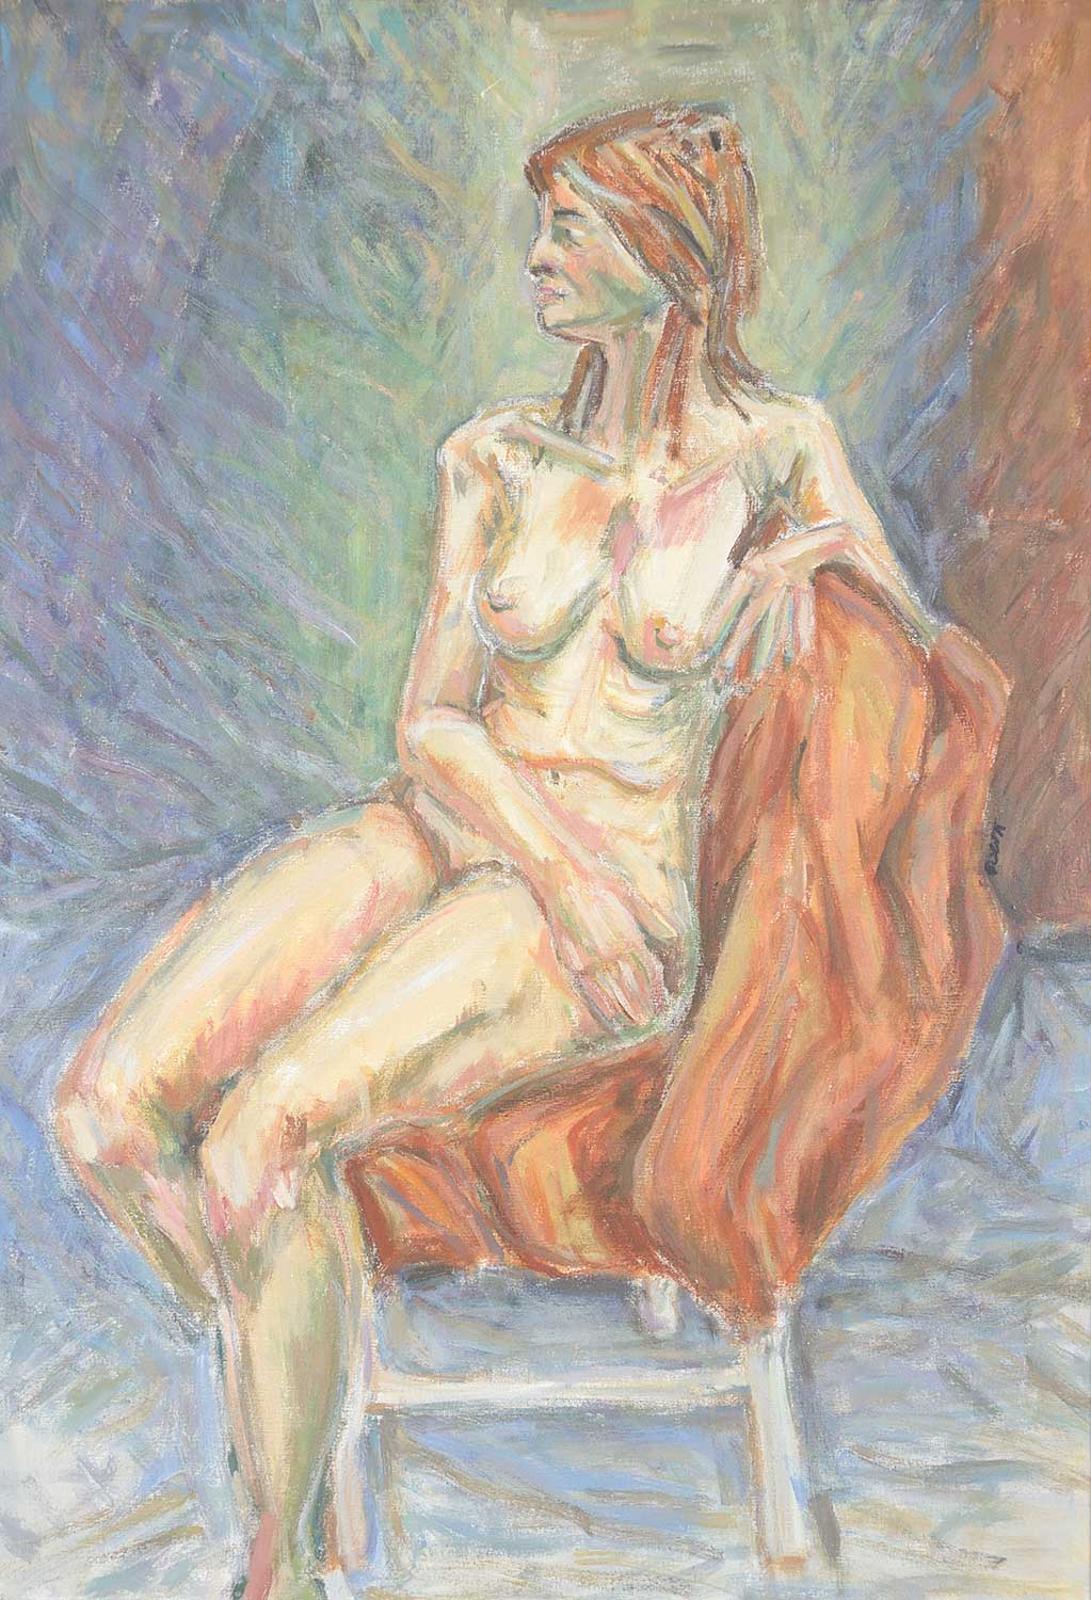 C. Scott - Untitled - Seated Nude